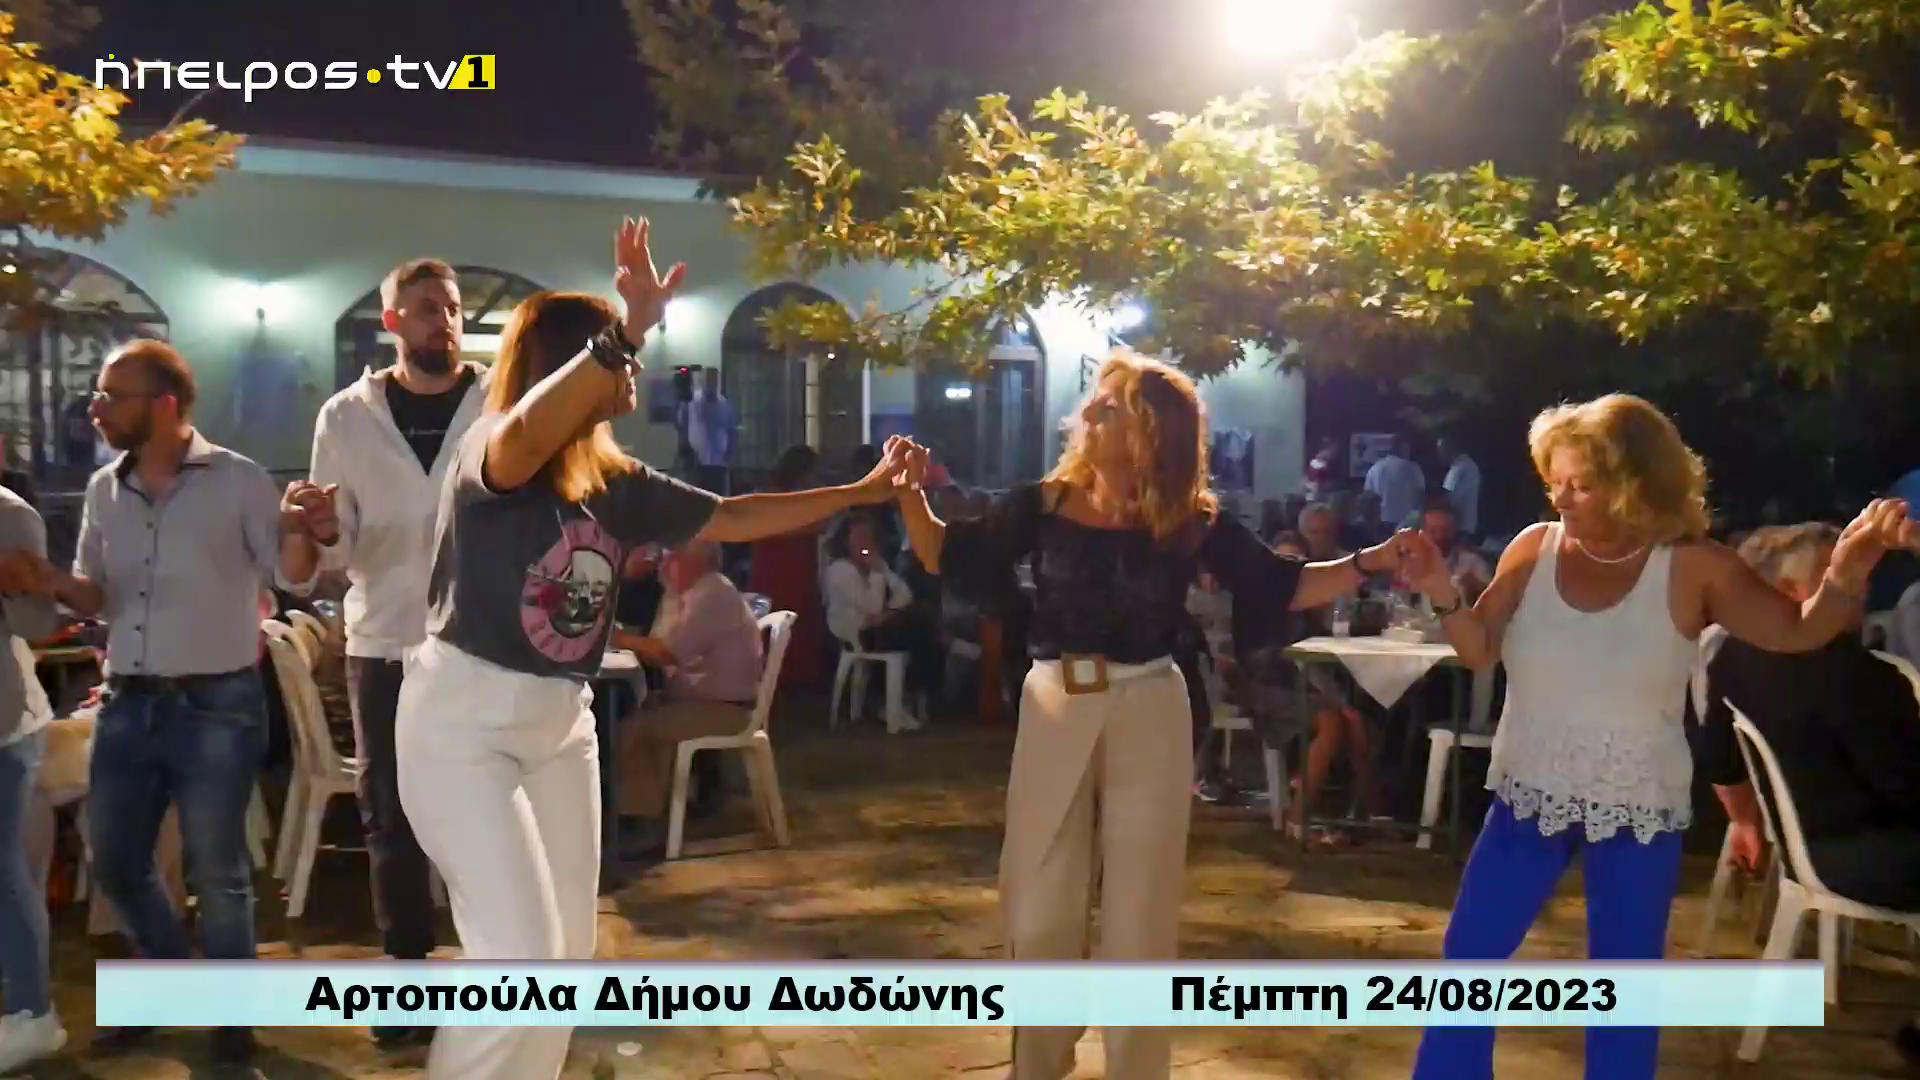 Watch Epirus TV1